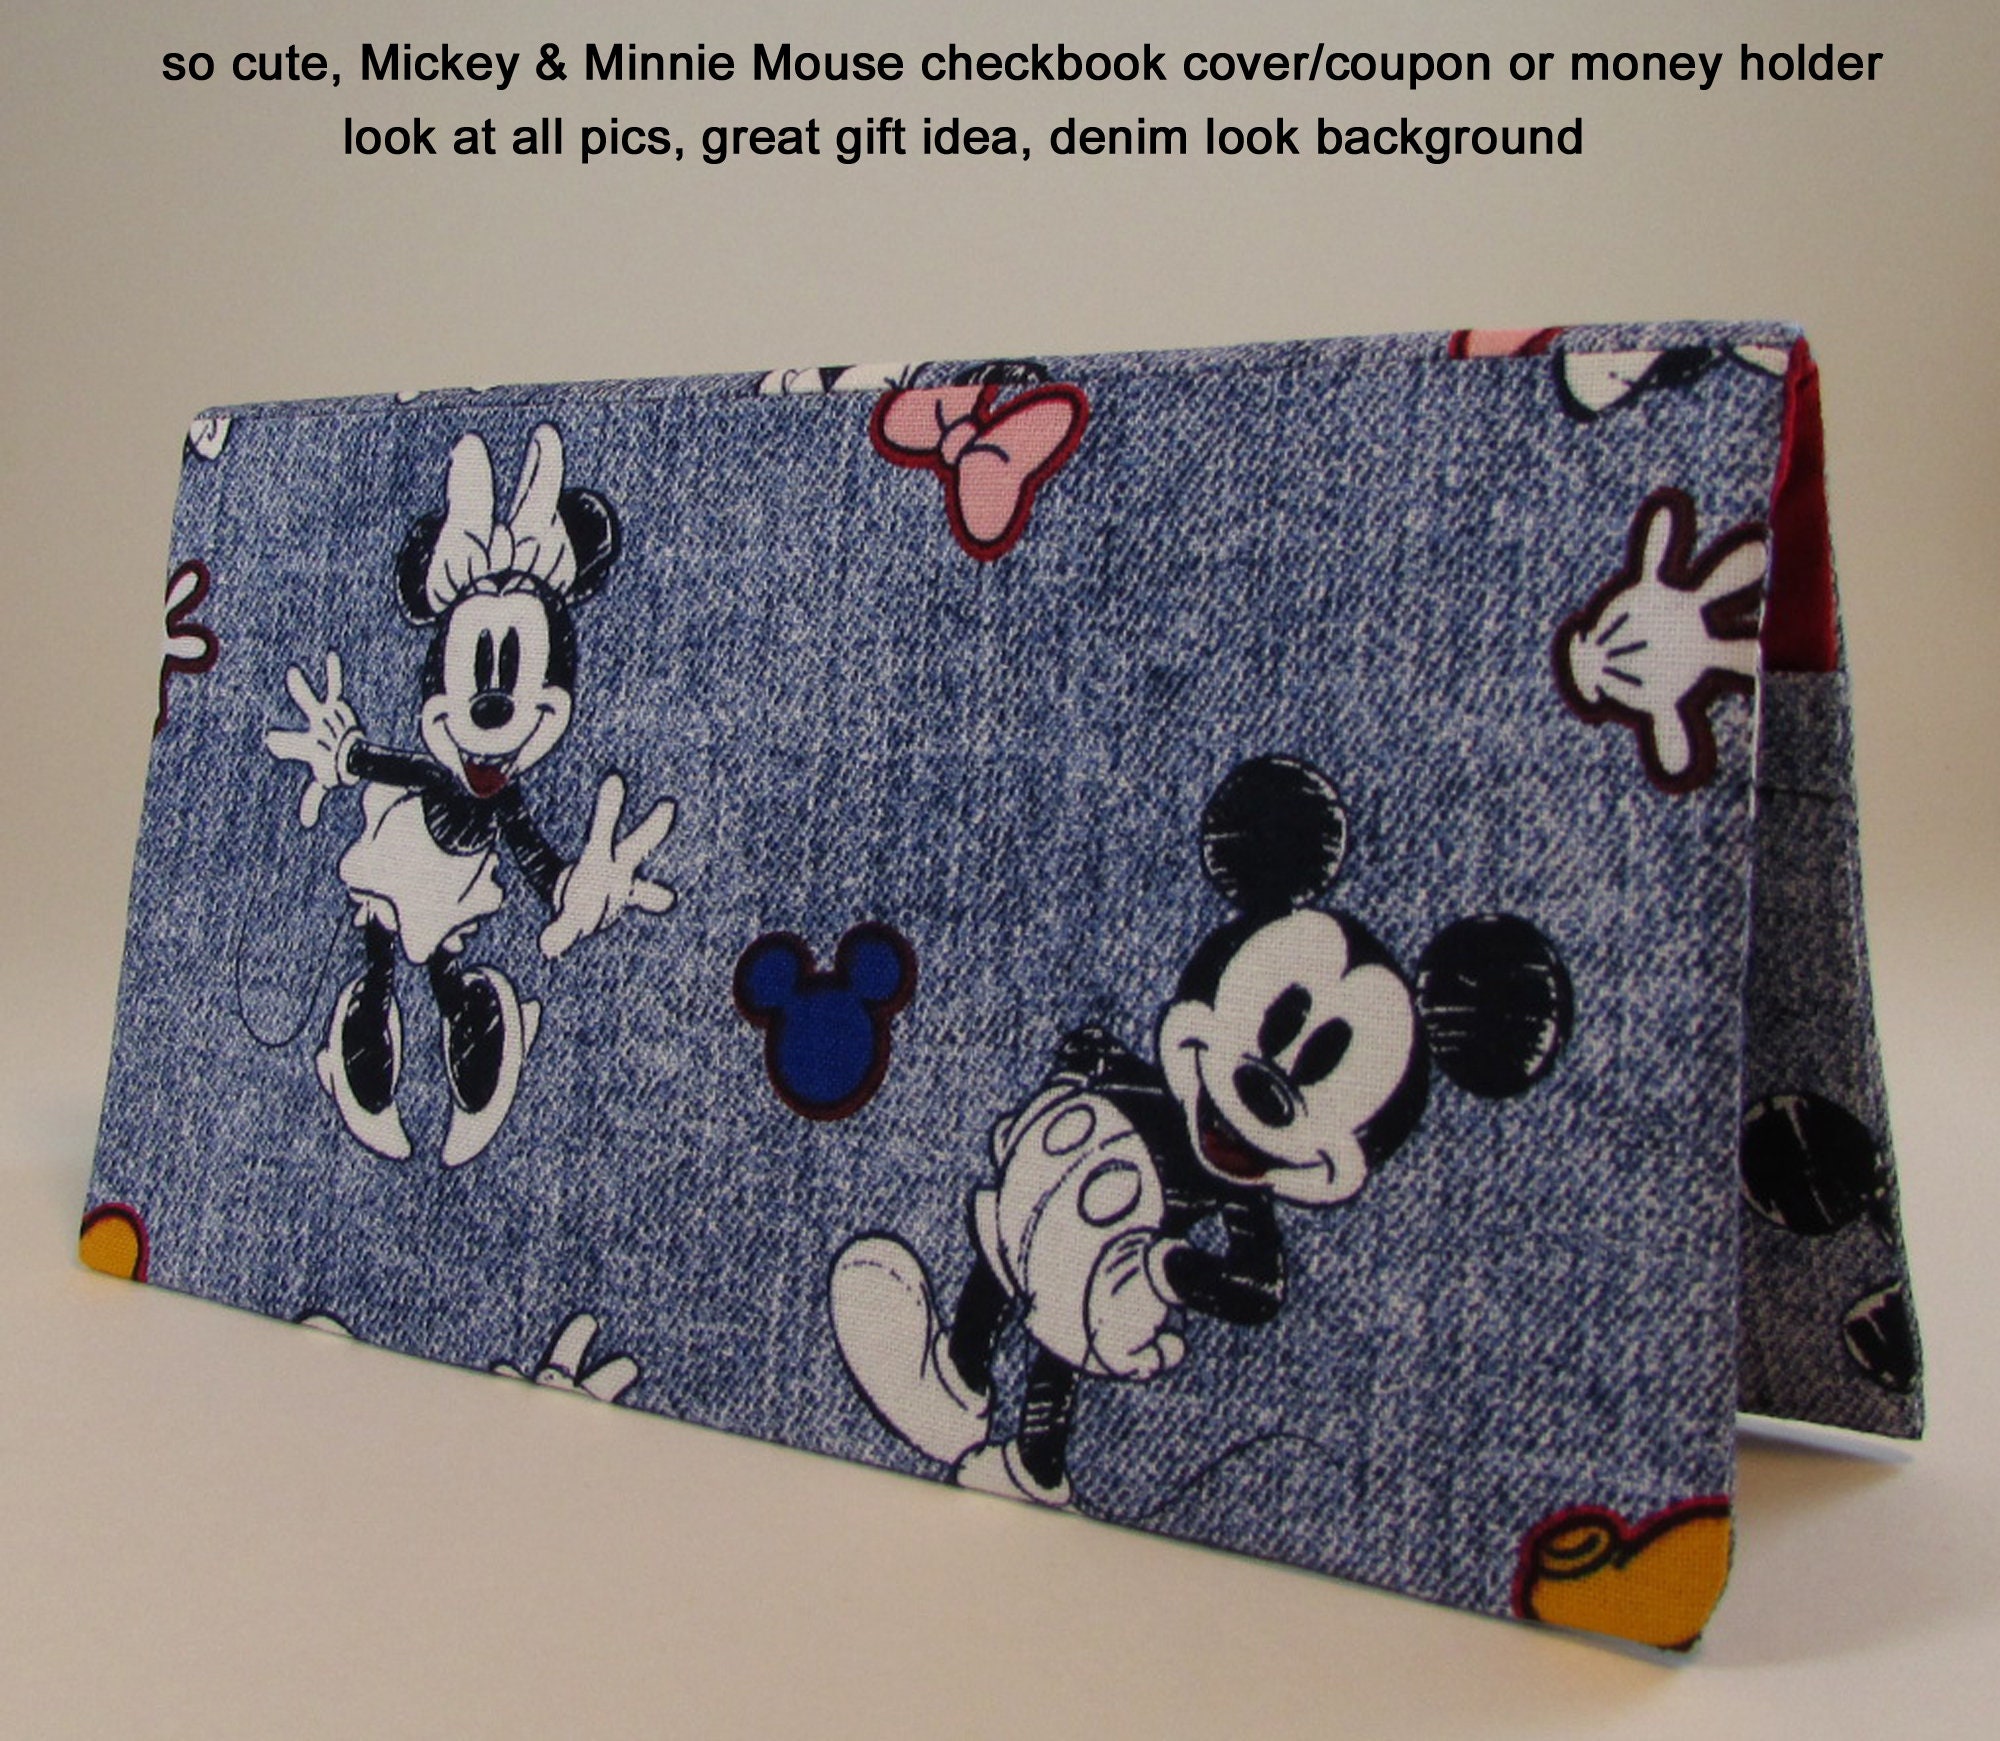 Couverture de chéquier Mickey et Minnie Porte-coupons - Etsy France